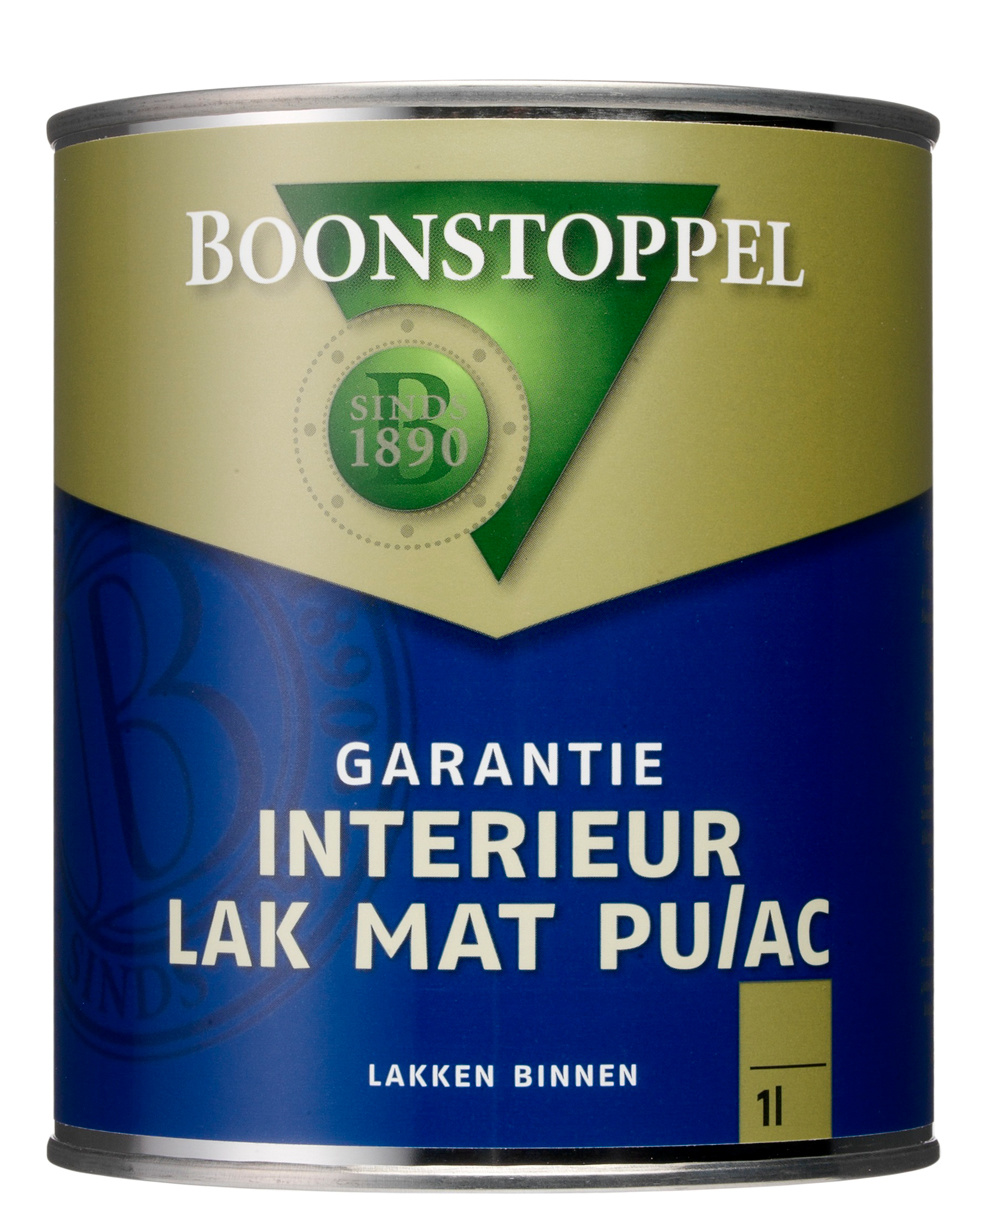 hond wrijving Verzwakken Boonstoppel Garantie Interieur Lak Mat PU/AC | Verfspullen.nl